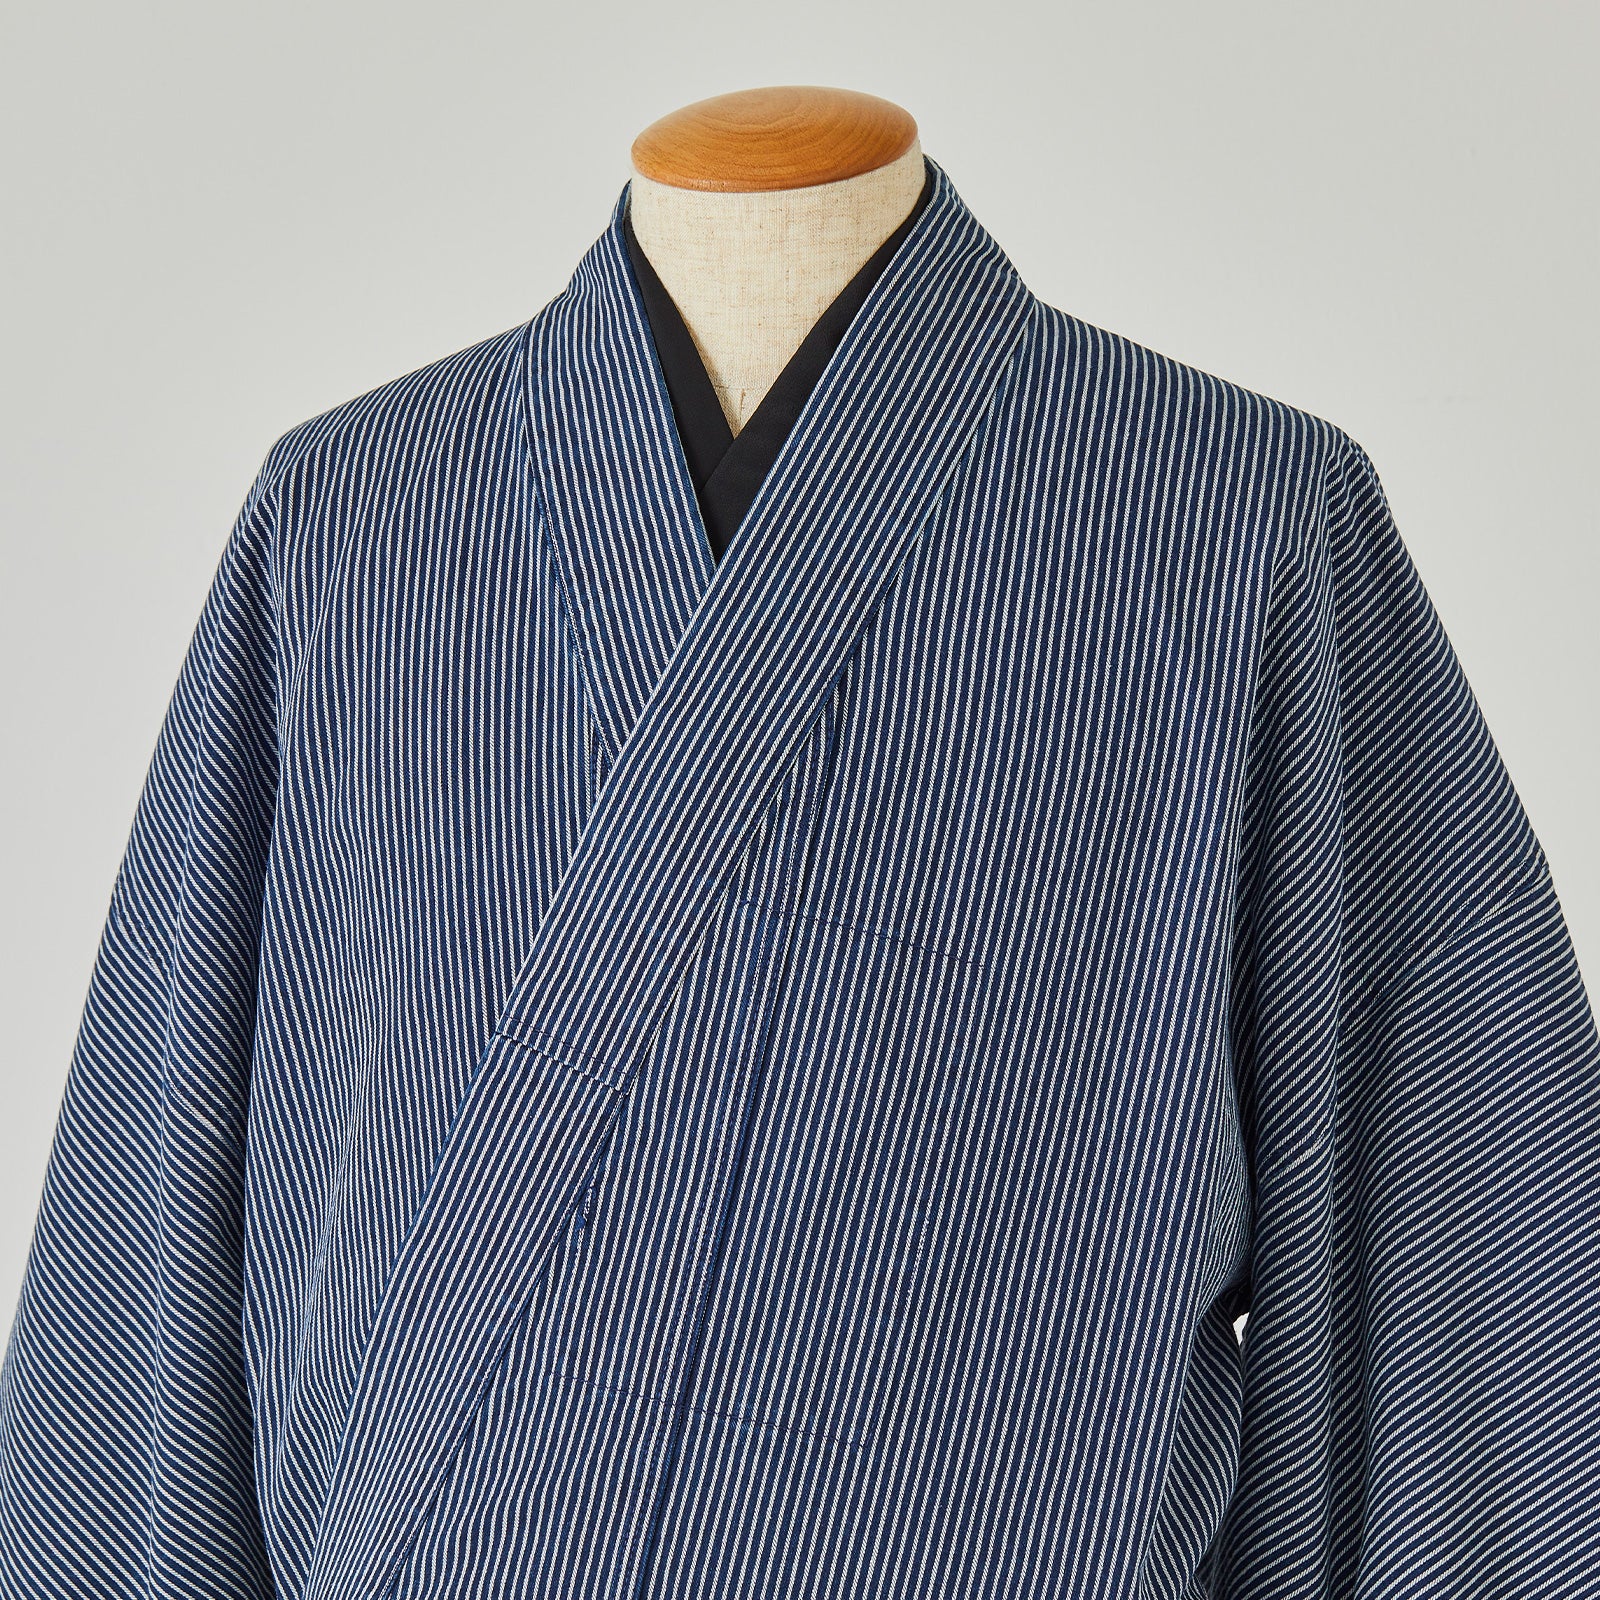 KAPUKI original denim kimono hickory indigo